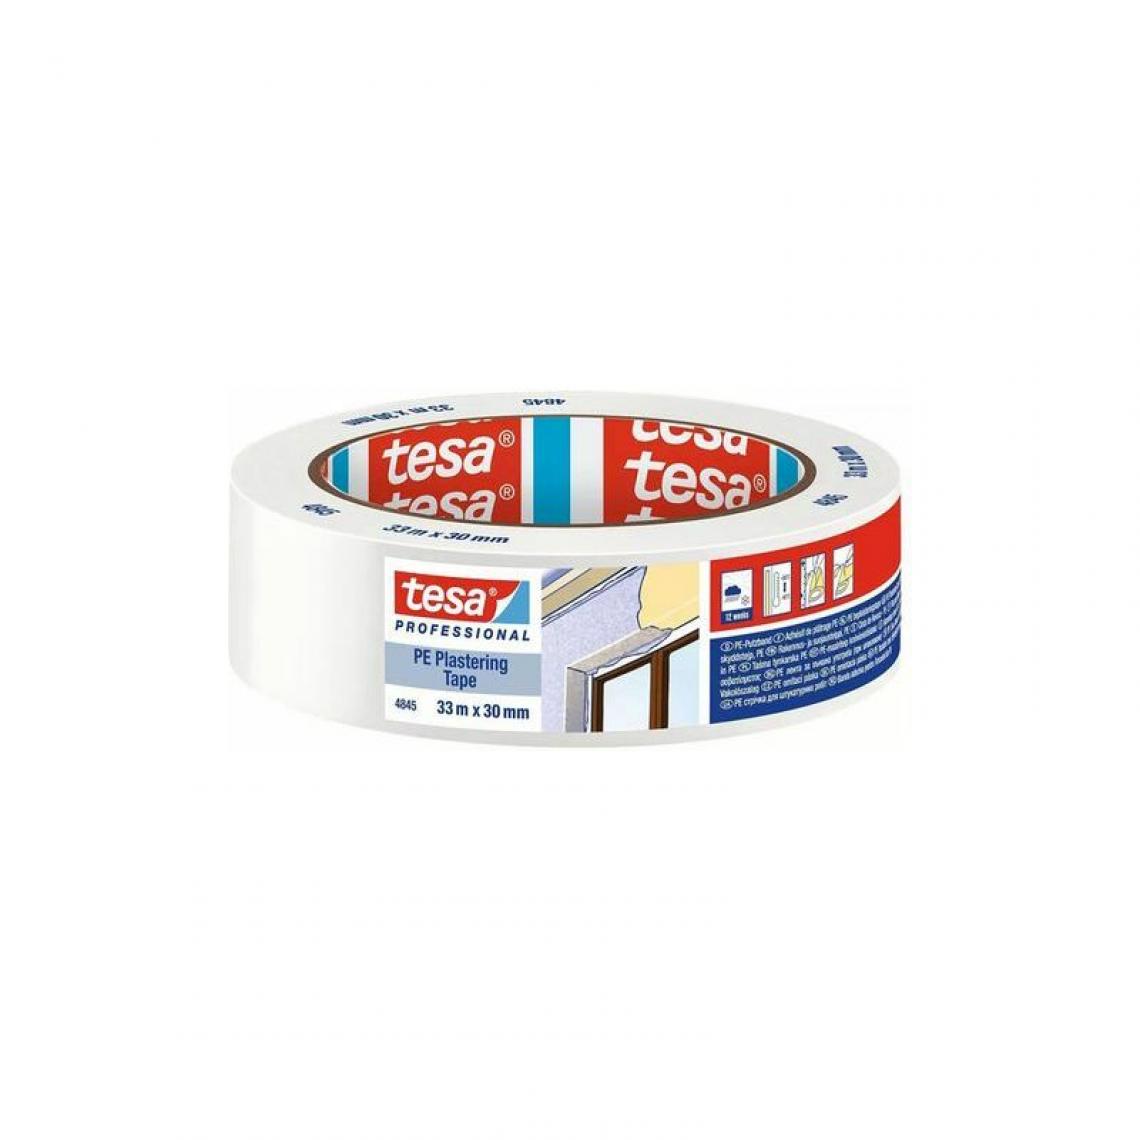 Tesa - tesa Ruban de protection 4845, lisse, 30 mm x 33 m, blanc () - Outils et accessoires du peintre